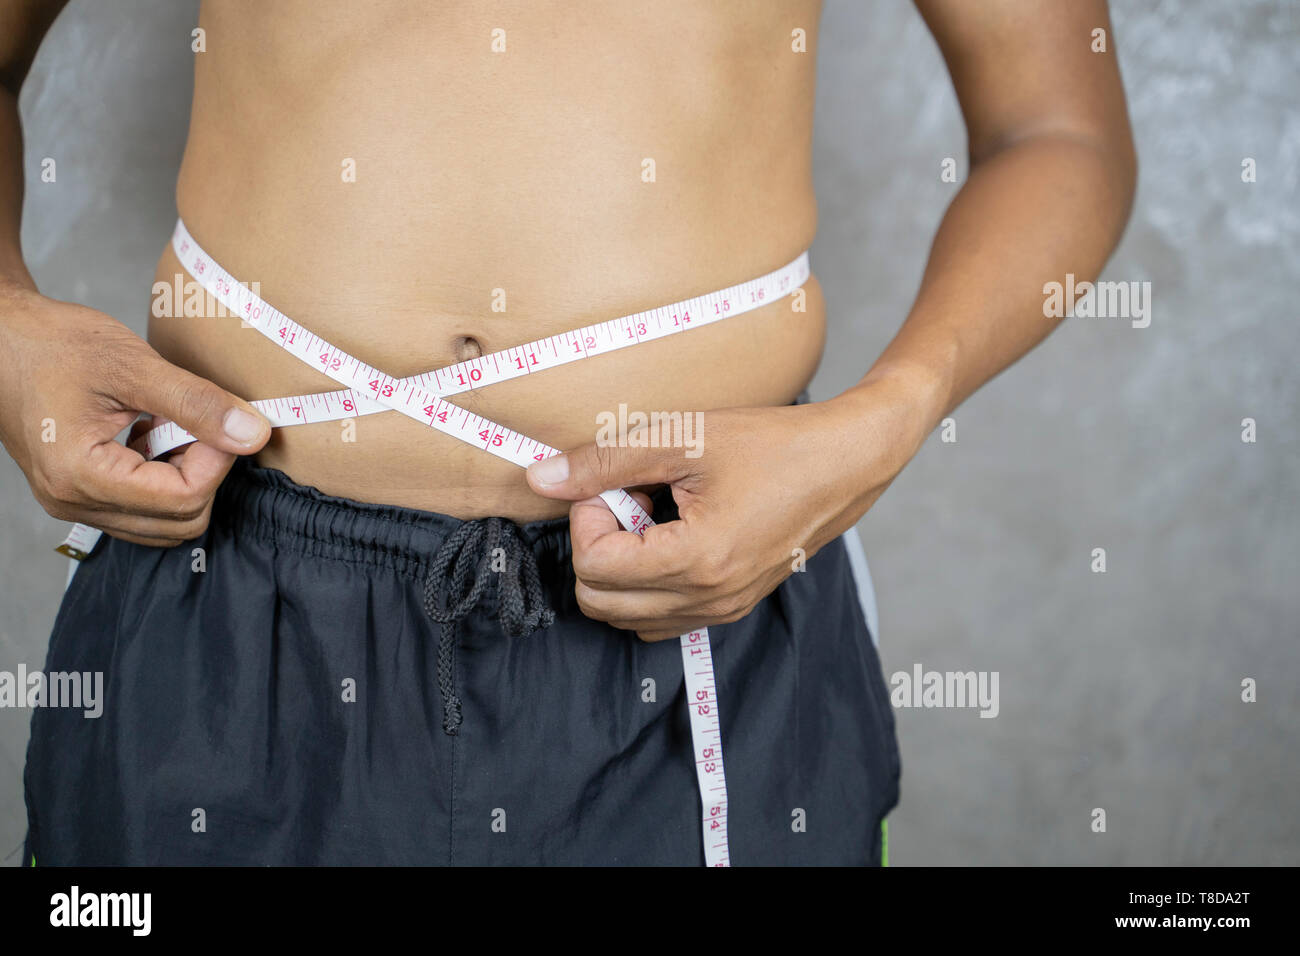 Übergewicht asiatischer Mann prüfen Sie überschüssiges Fett von Taille body mit Maßband. Fetter Mann mit großen Bauch. Ernährung und Gewicht zu verlieren. - Bild Stockfoto